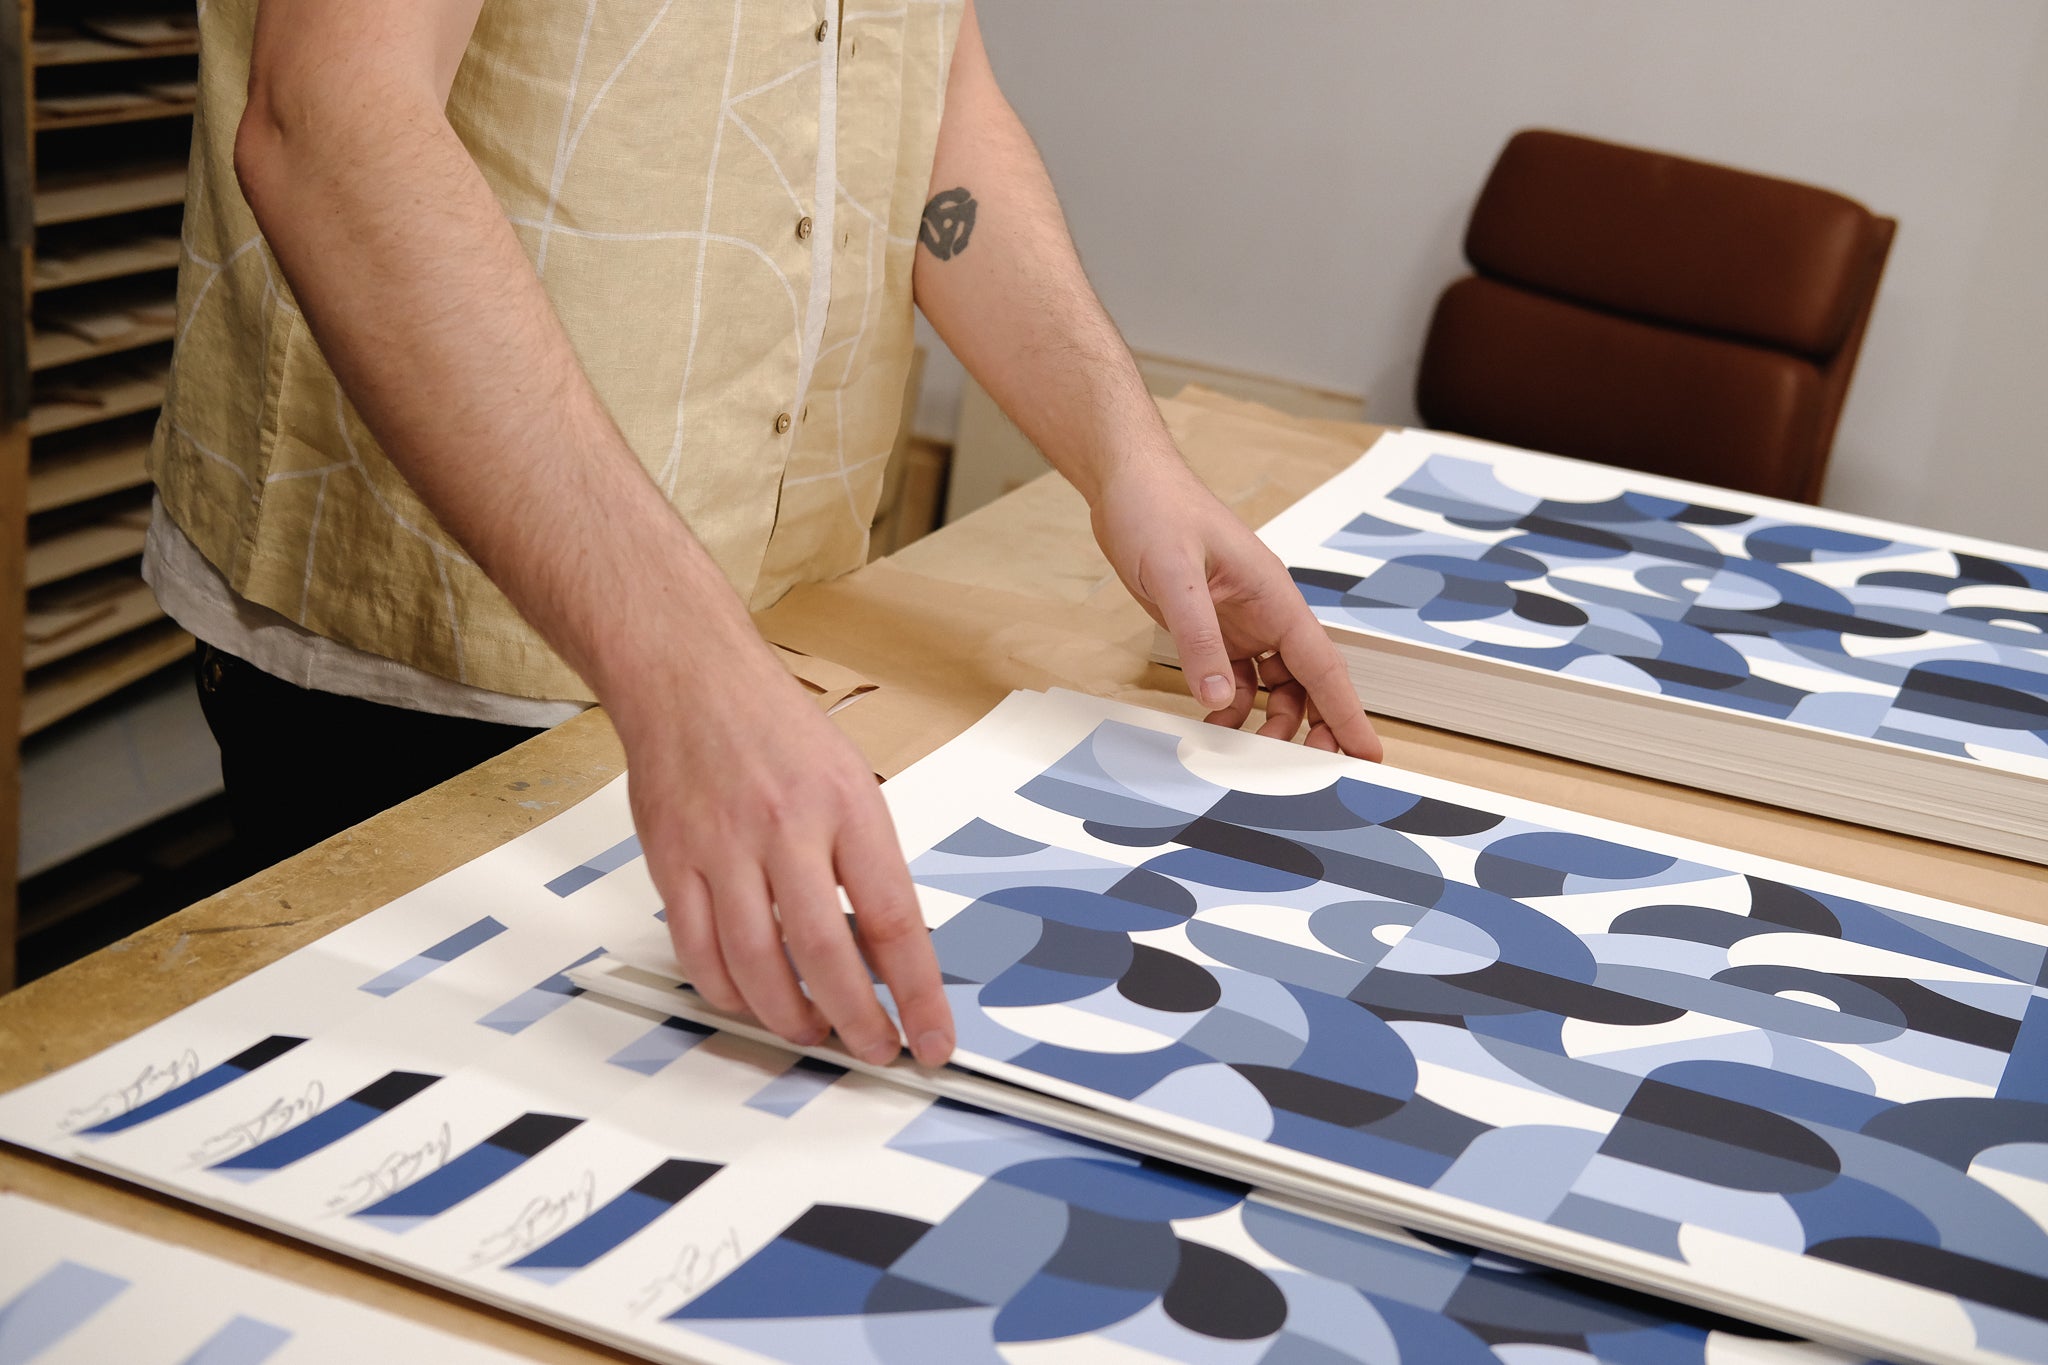 A man rearranges prints on a table.